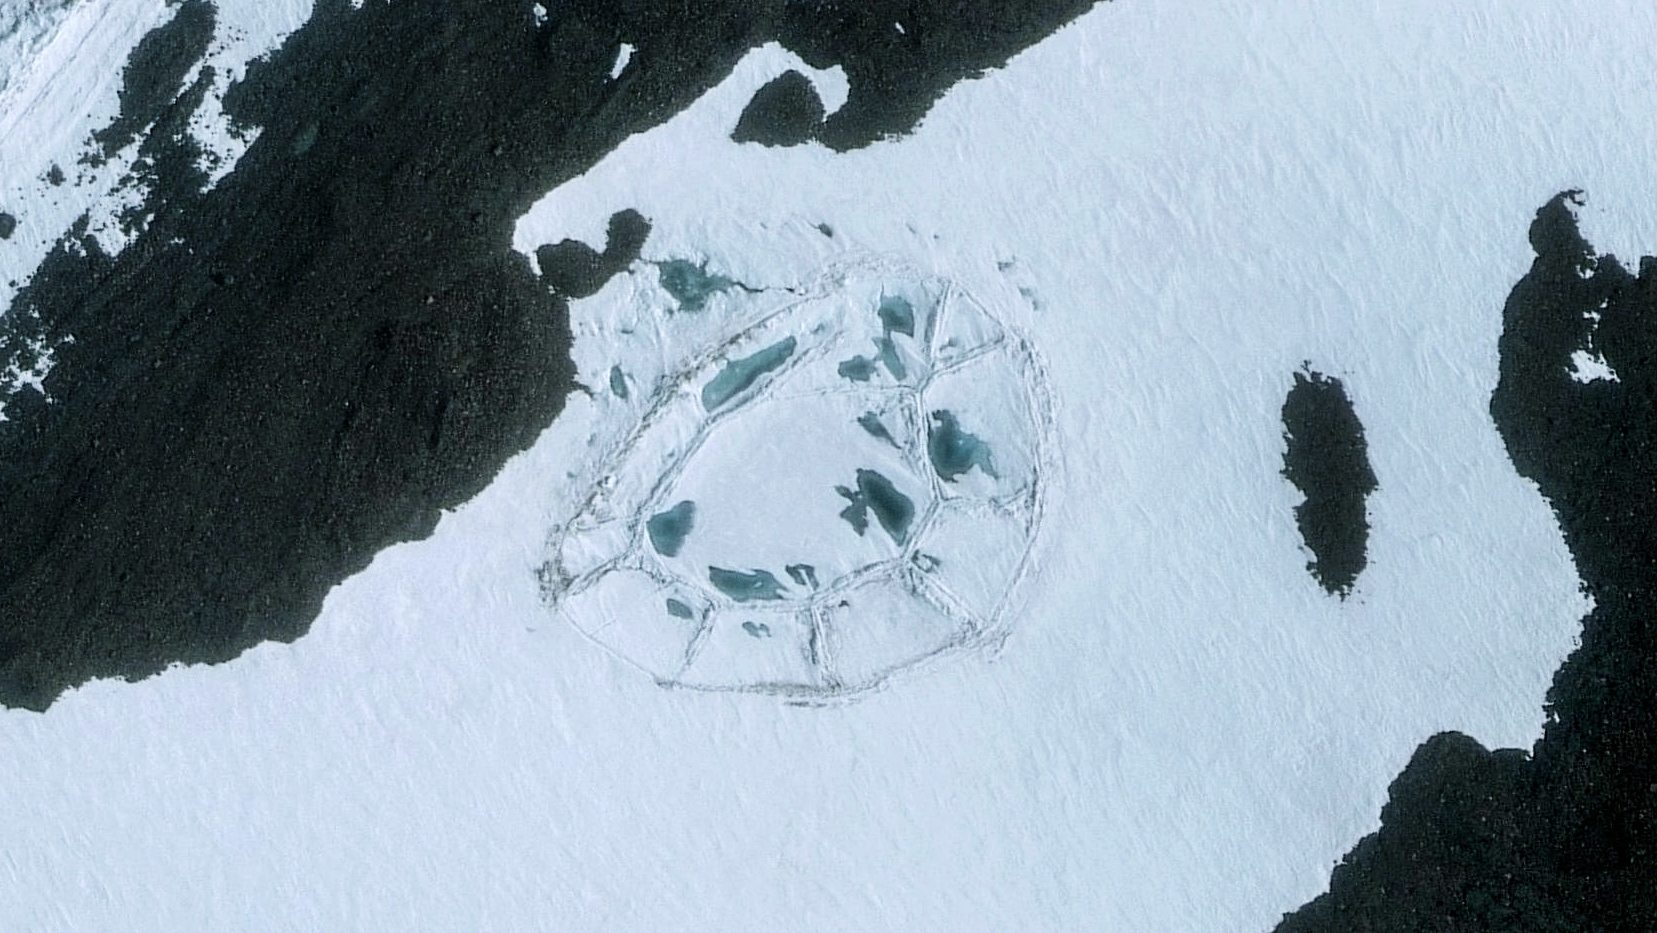 โครงสร้างวงรีขนาดใหญ่ที่พบในทวีปแอนตาร์กติกา: ประวัติศาสตร์ต้องถูกเขียนใหม่! 2